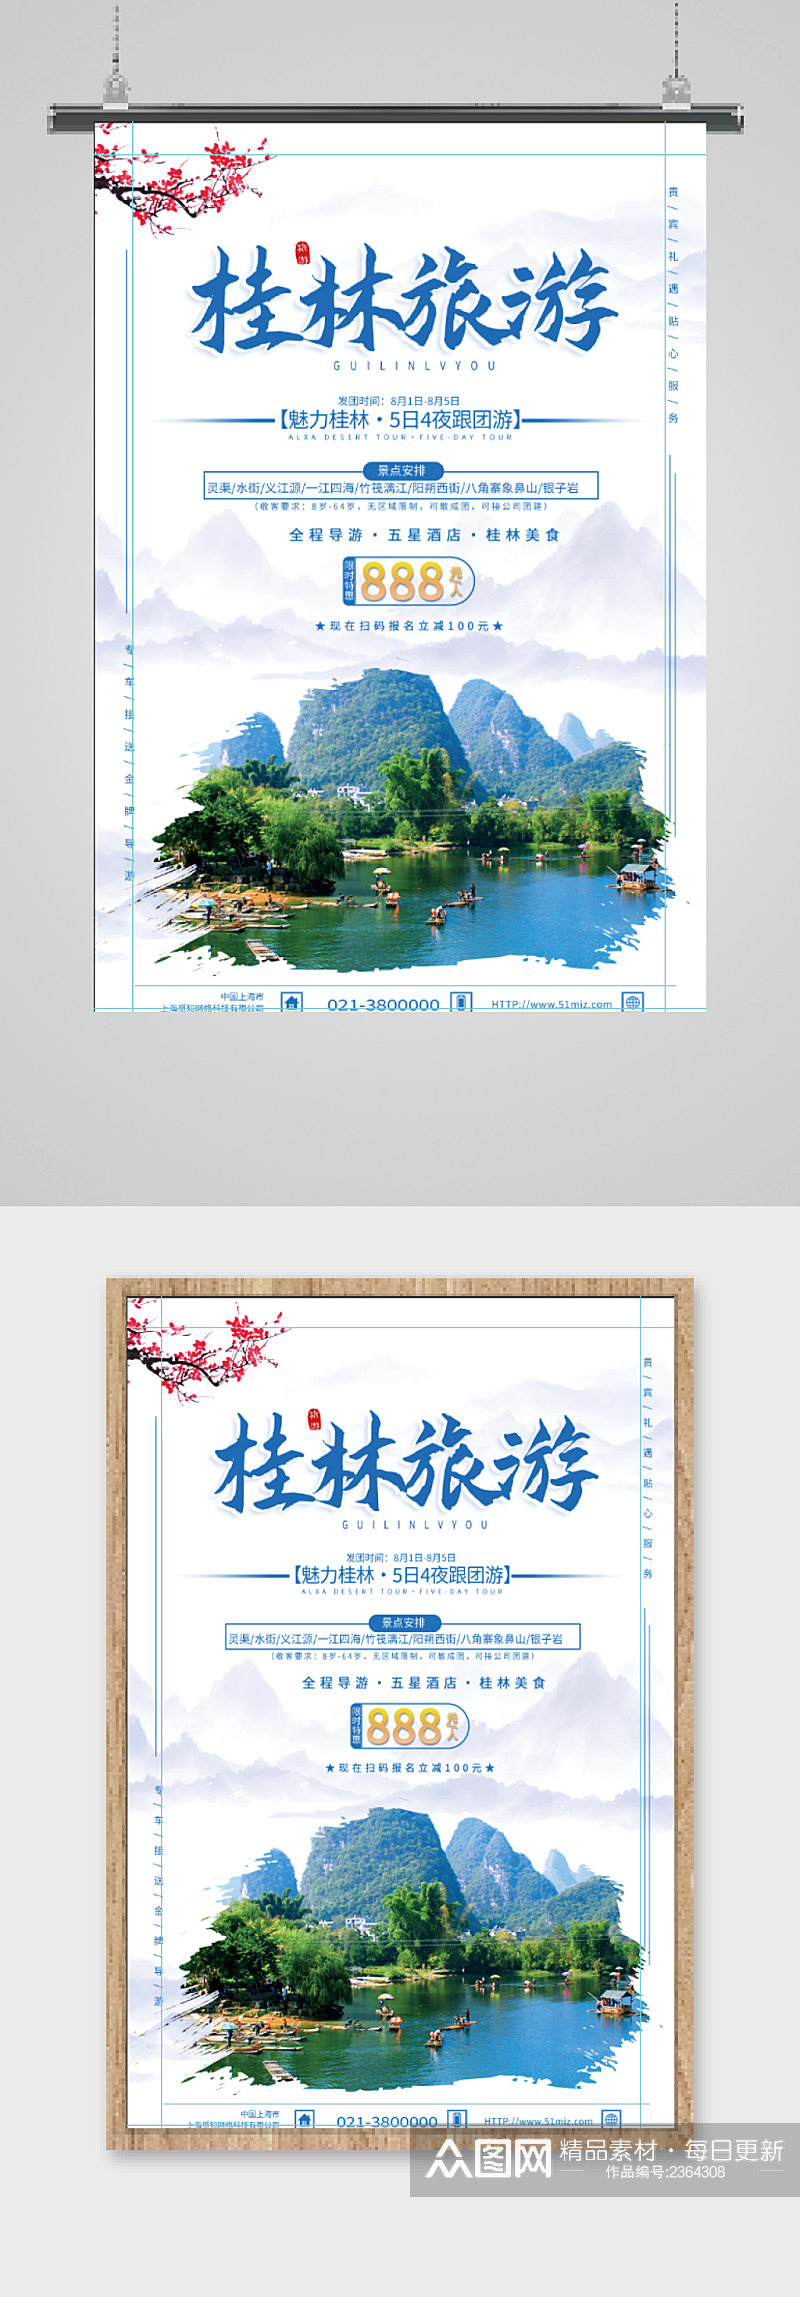 桂林旅游宣传海报素材